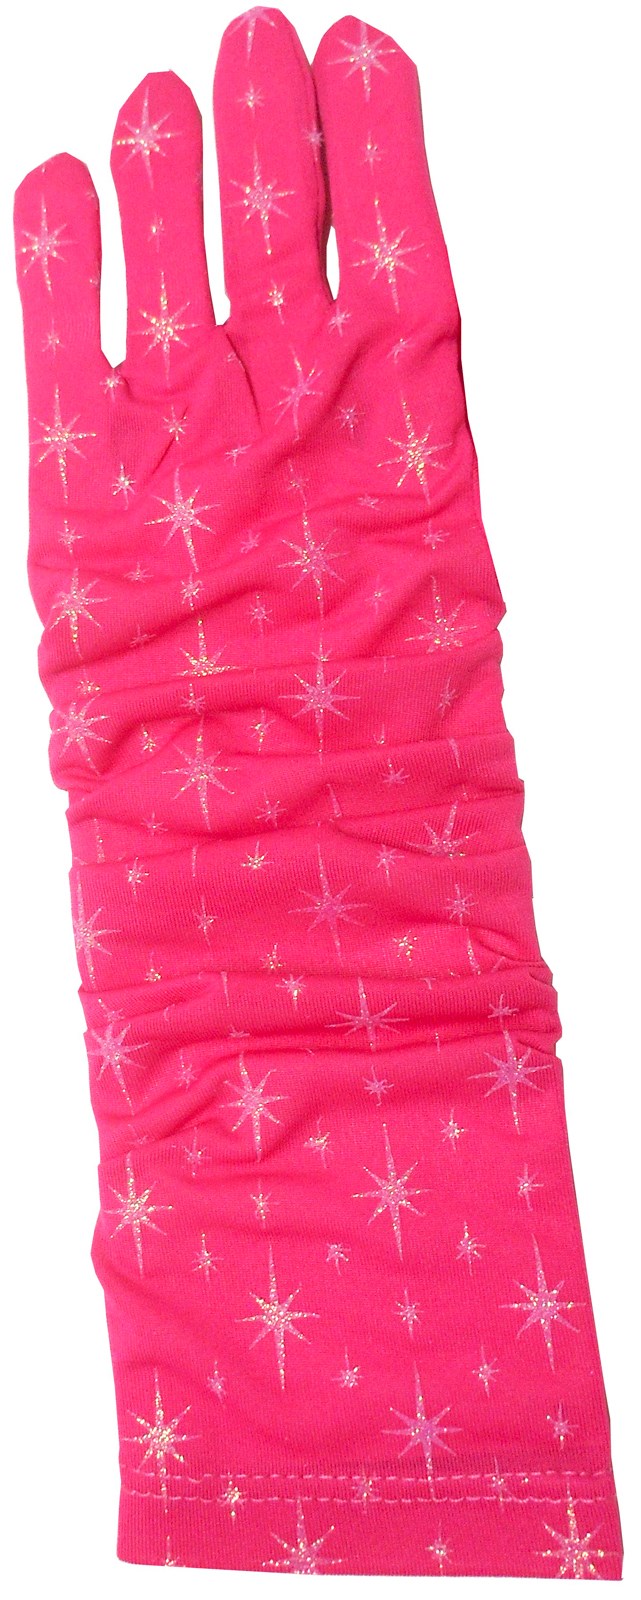 Hot Pink Glitter Gloves For Girls